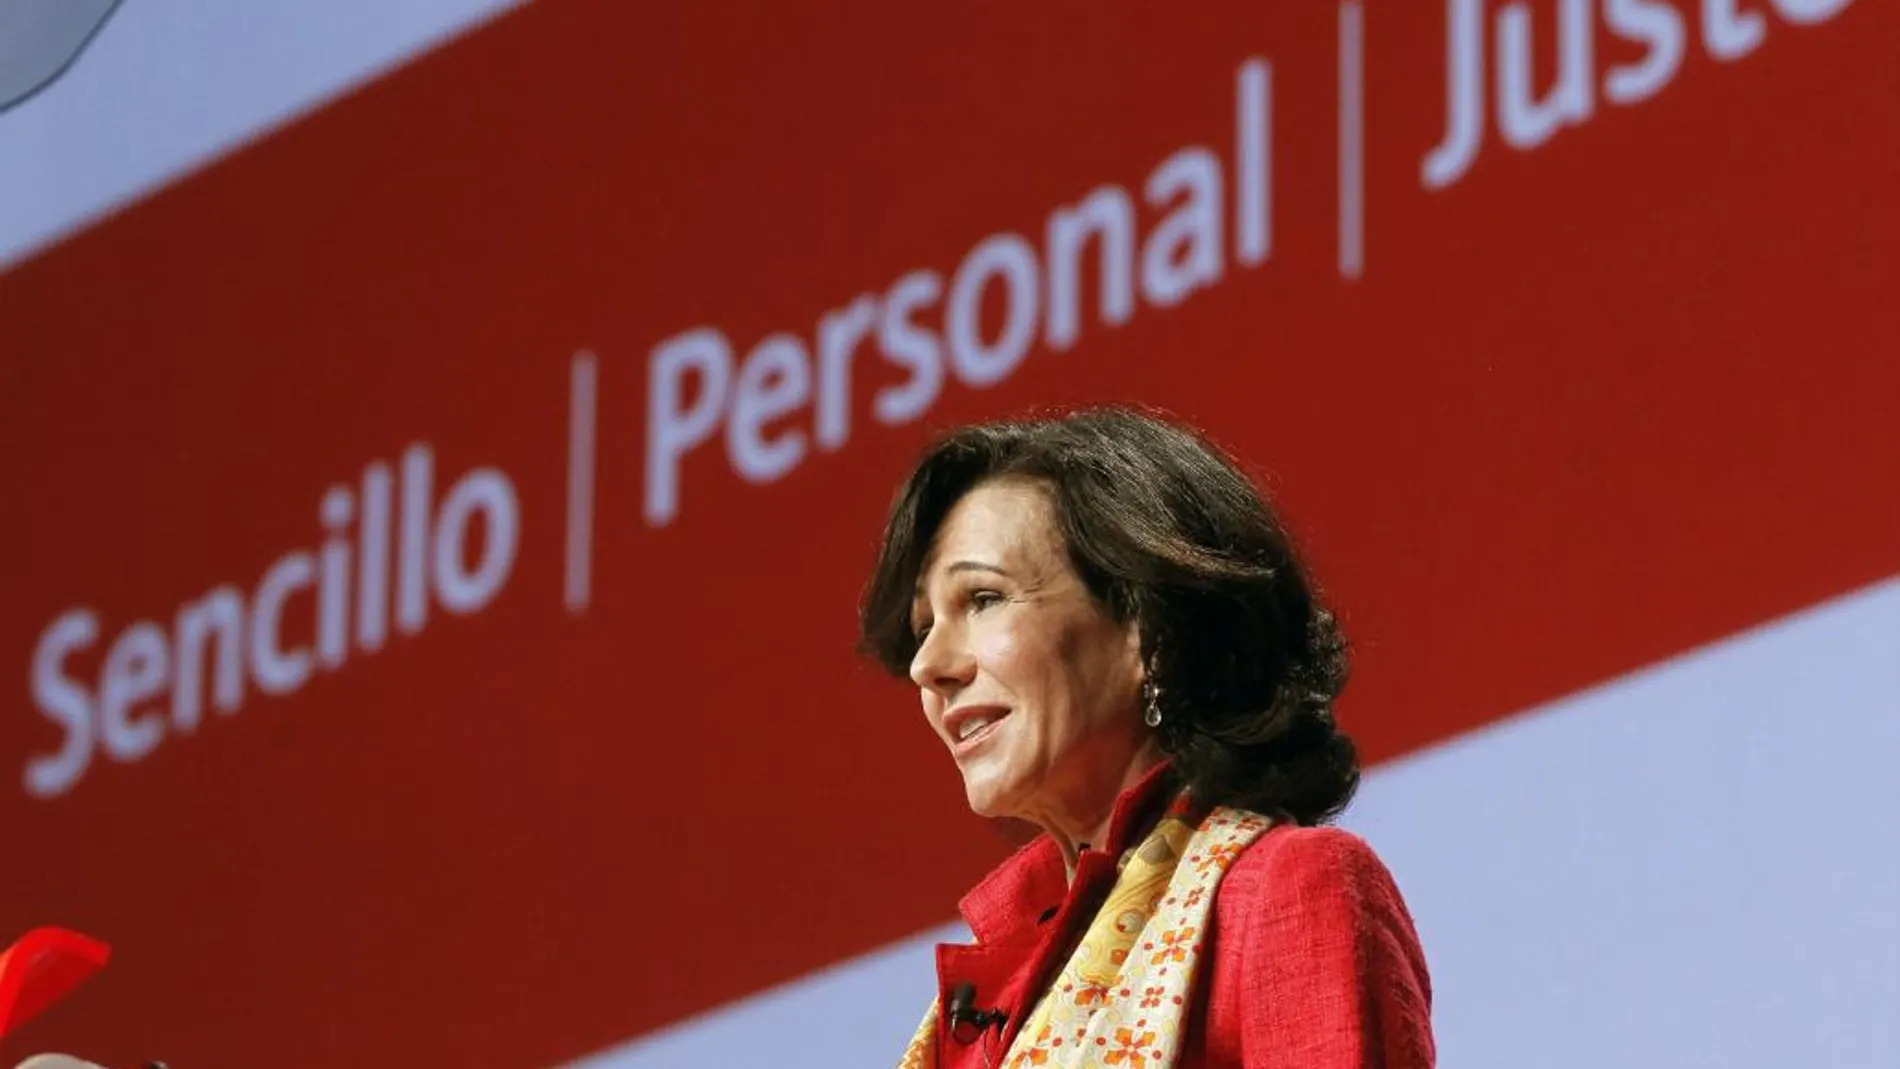 La presidenta del Banco Santander, Ana Botín, durante la Junta General de Accionistas del Banco de Santander